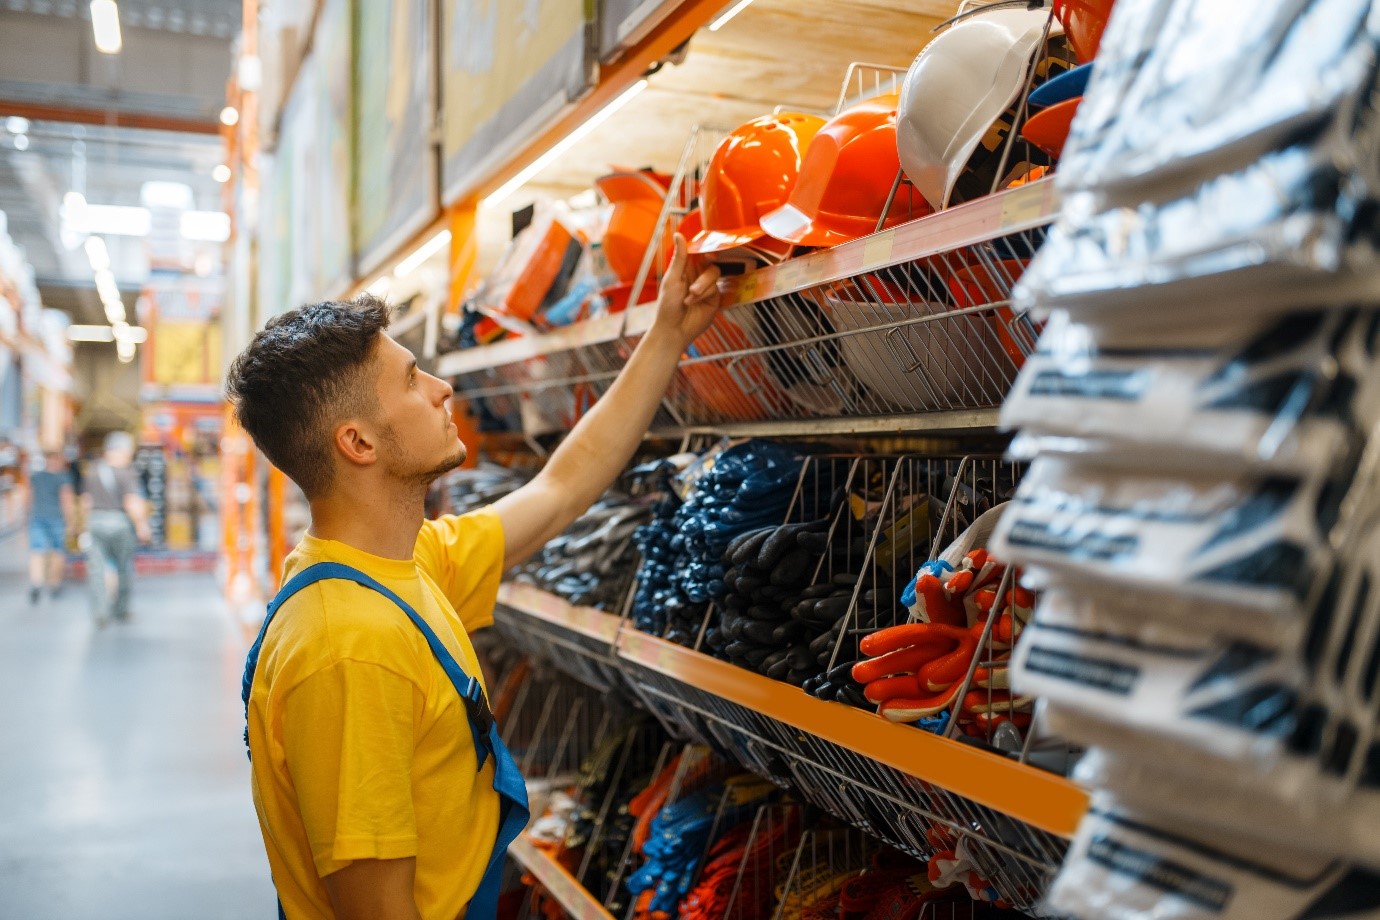 młody mężczyzna w żółtej koszulce i roboczym kombinezonie w sklepie budowlanym wybiera kask i robocze rękawice